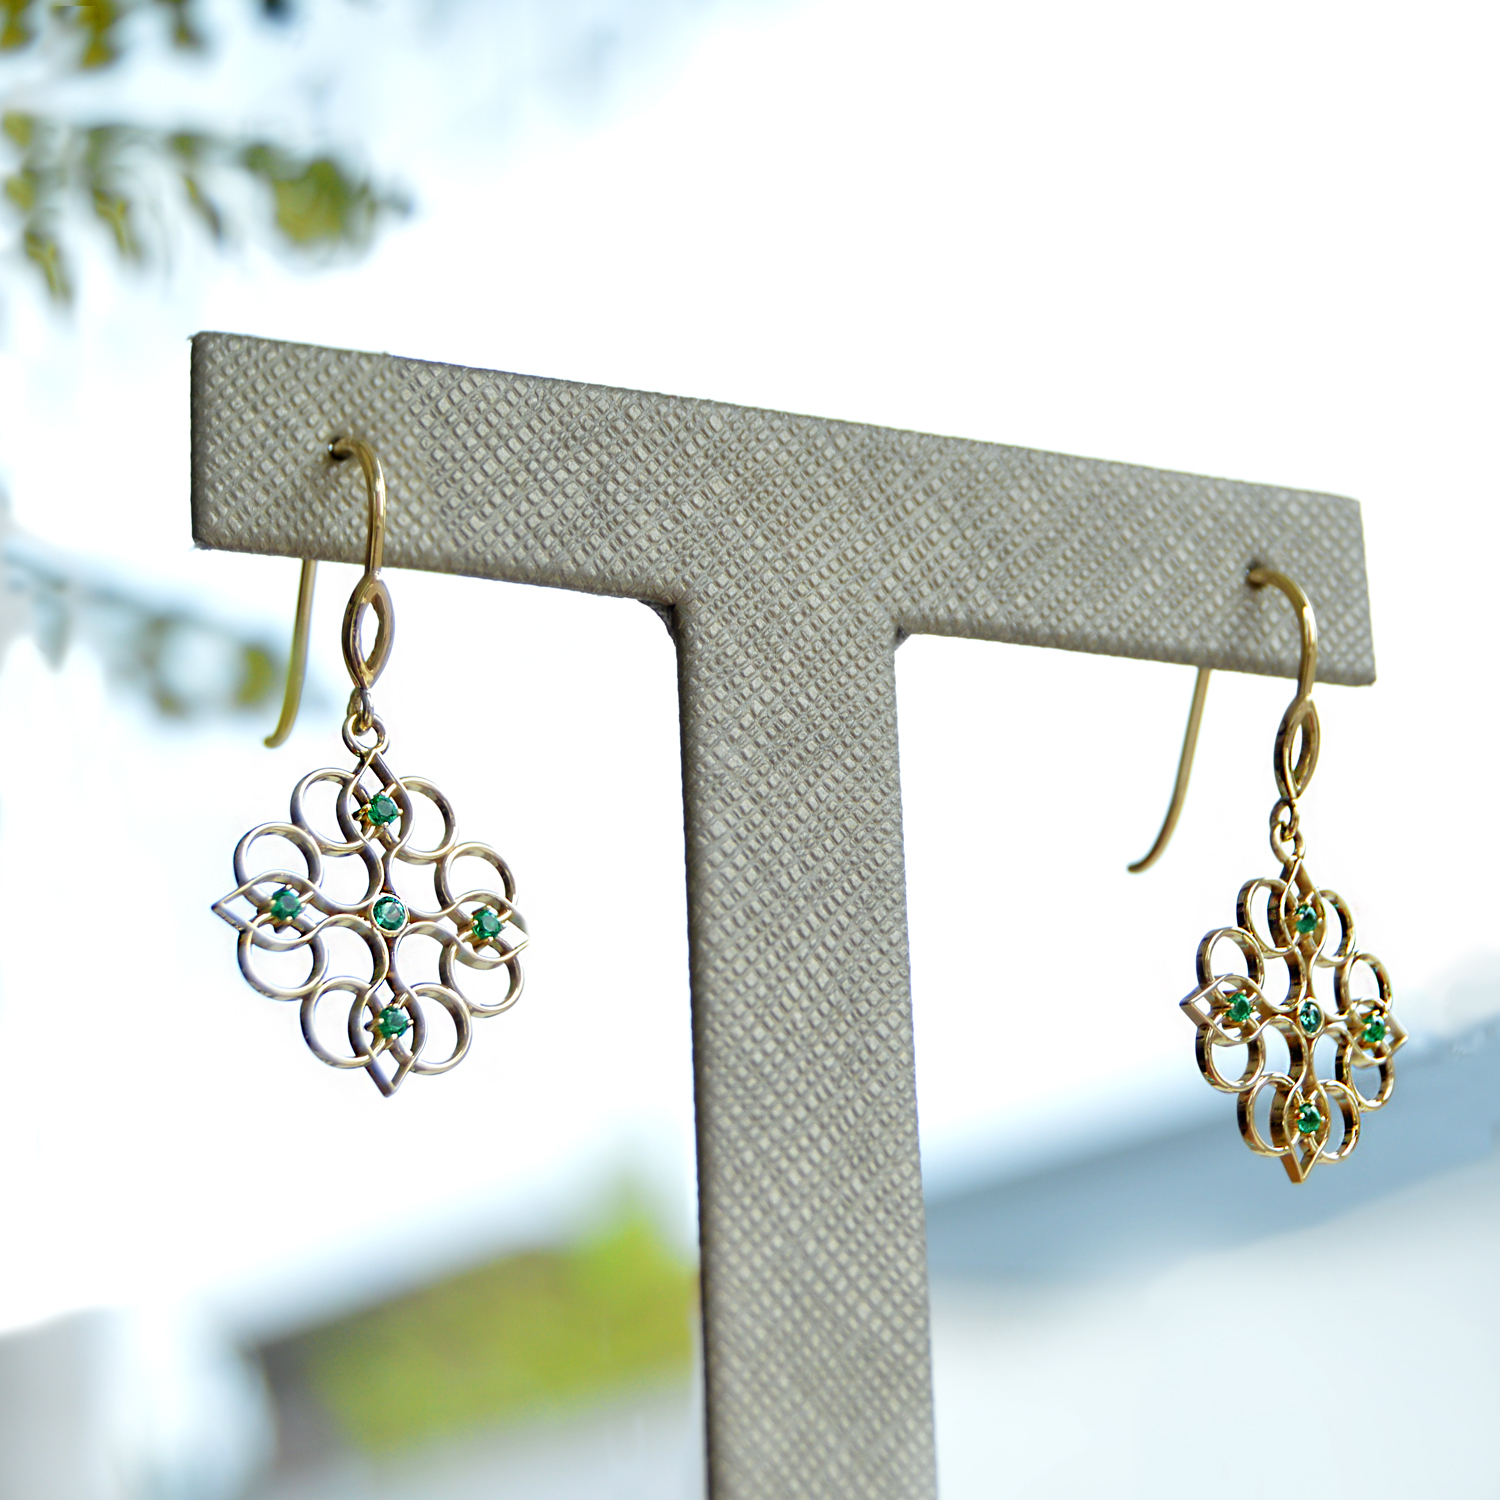 Emerald dangle earrings in 14k yellow gold